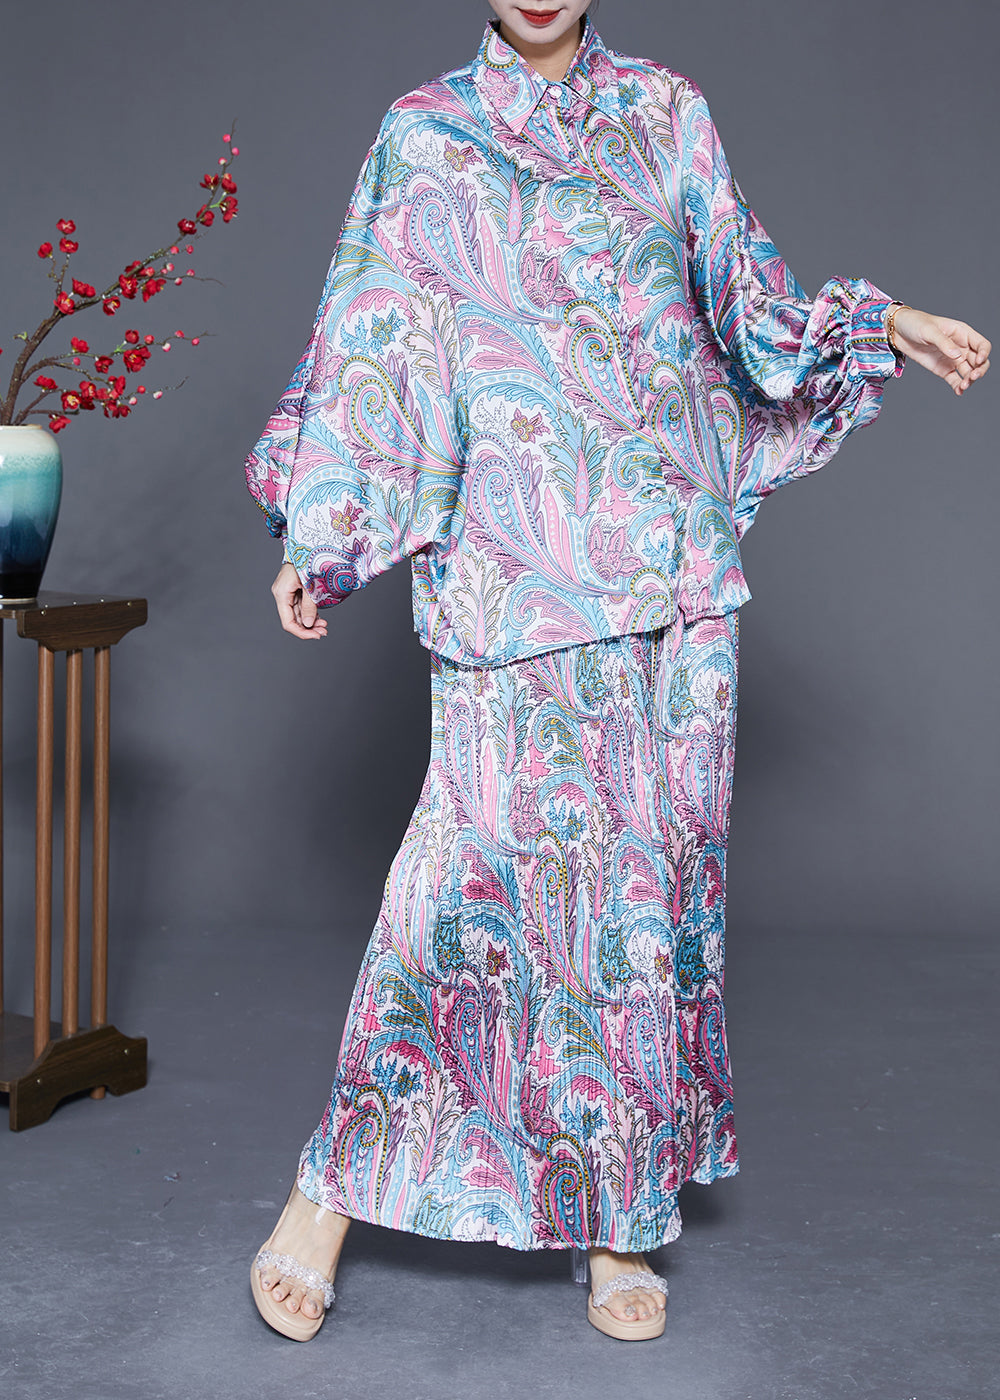 Boho Oversized Print Wrinkled Silk Two Piece Set Women Clothing Batwing Sleeve LY2892 - fabuloryshop